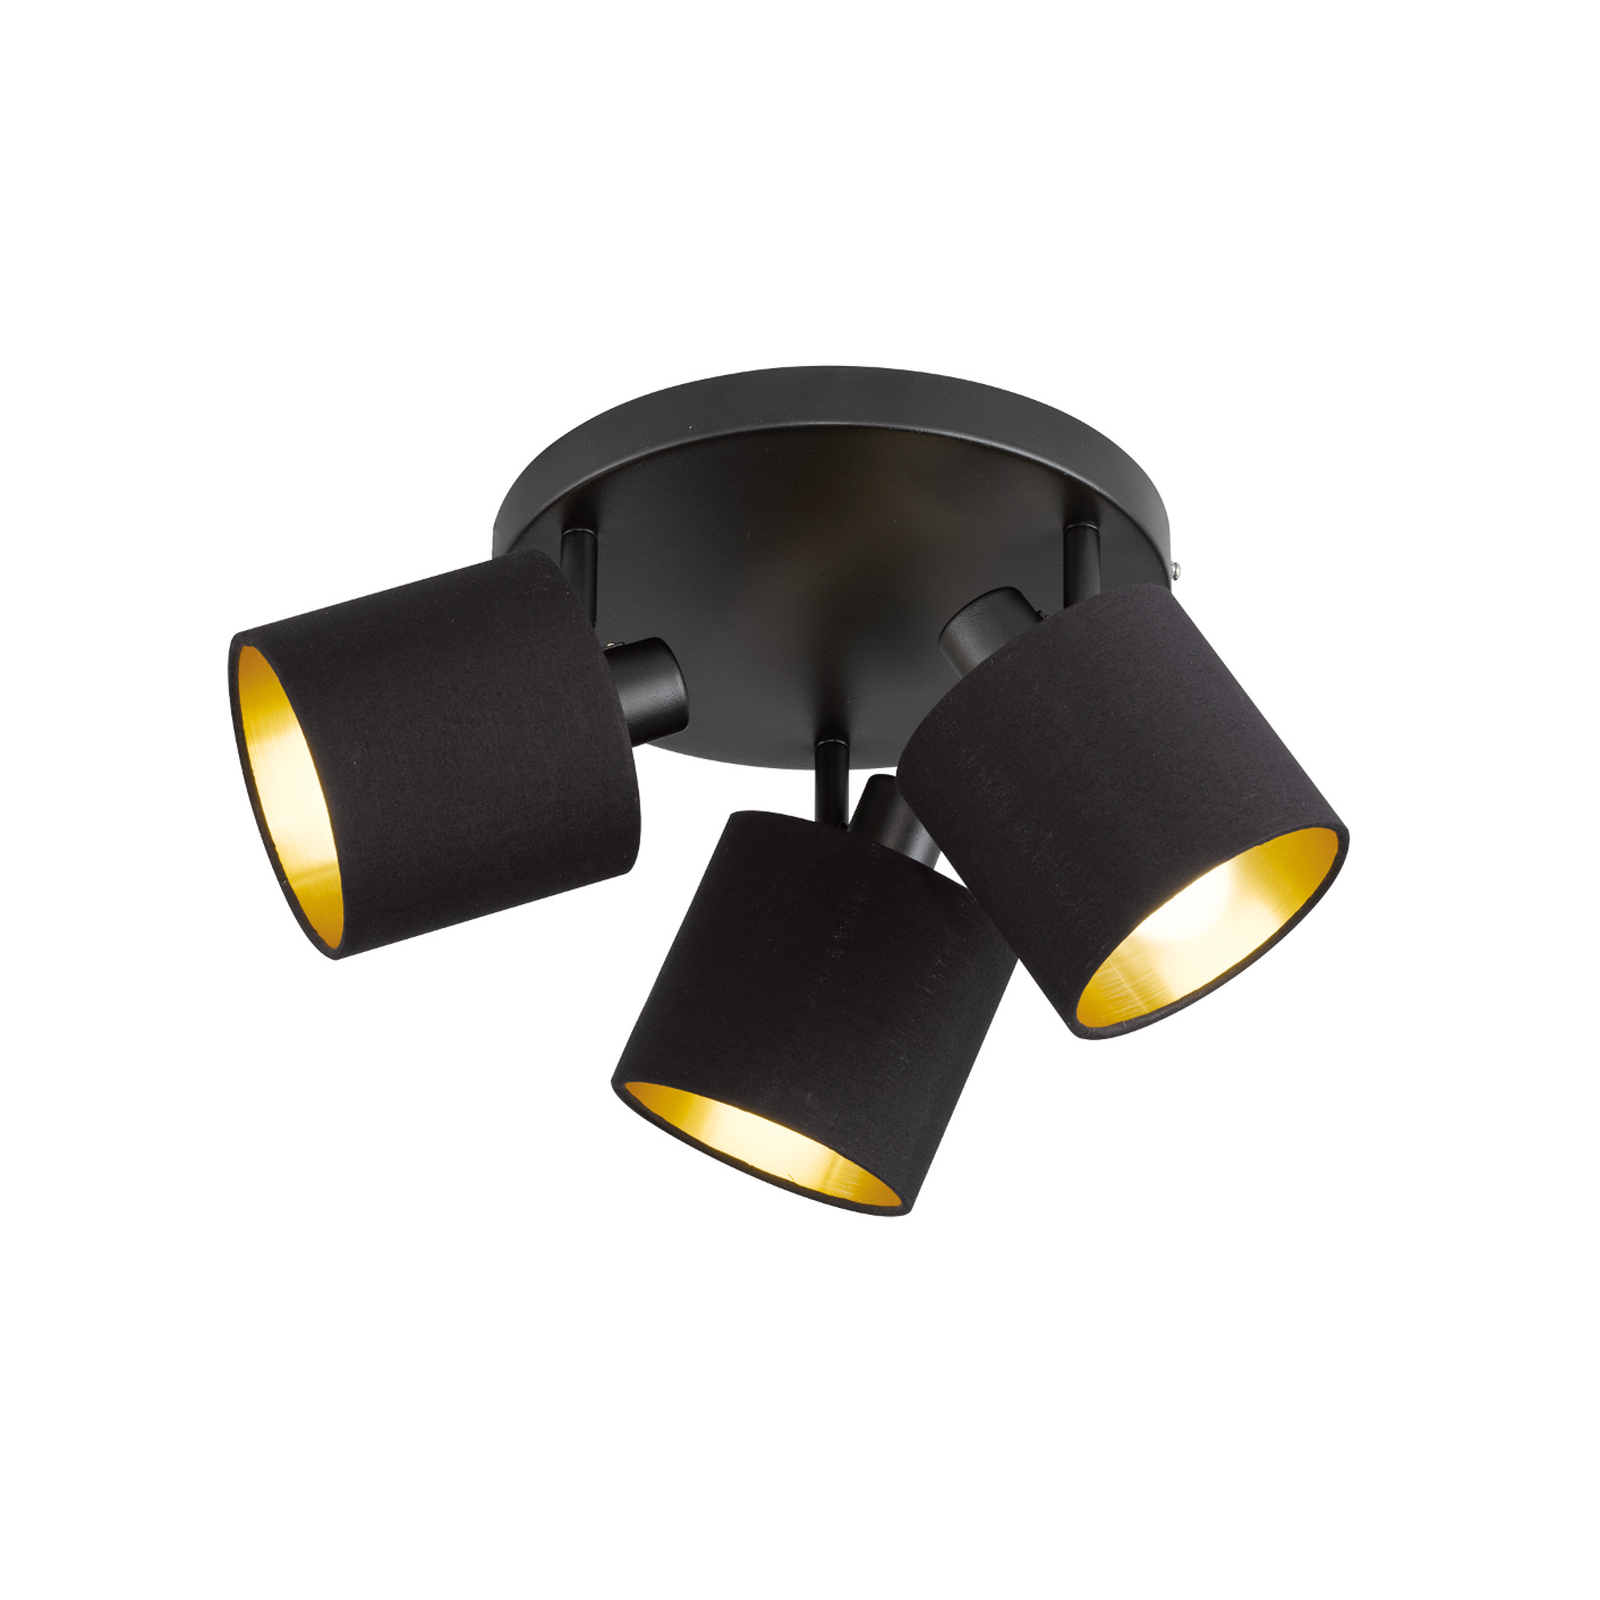 Tommy stropni reflektor, črna/zlata, Ø 25 cm, 3-svetlobni, tkanina